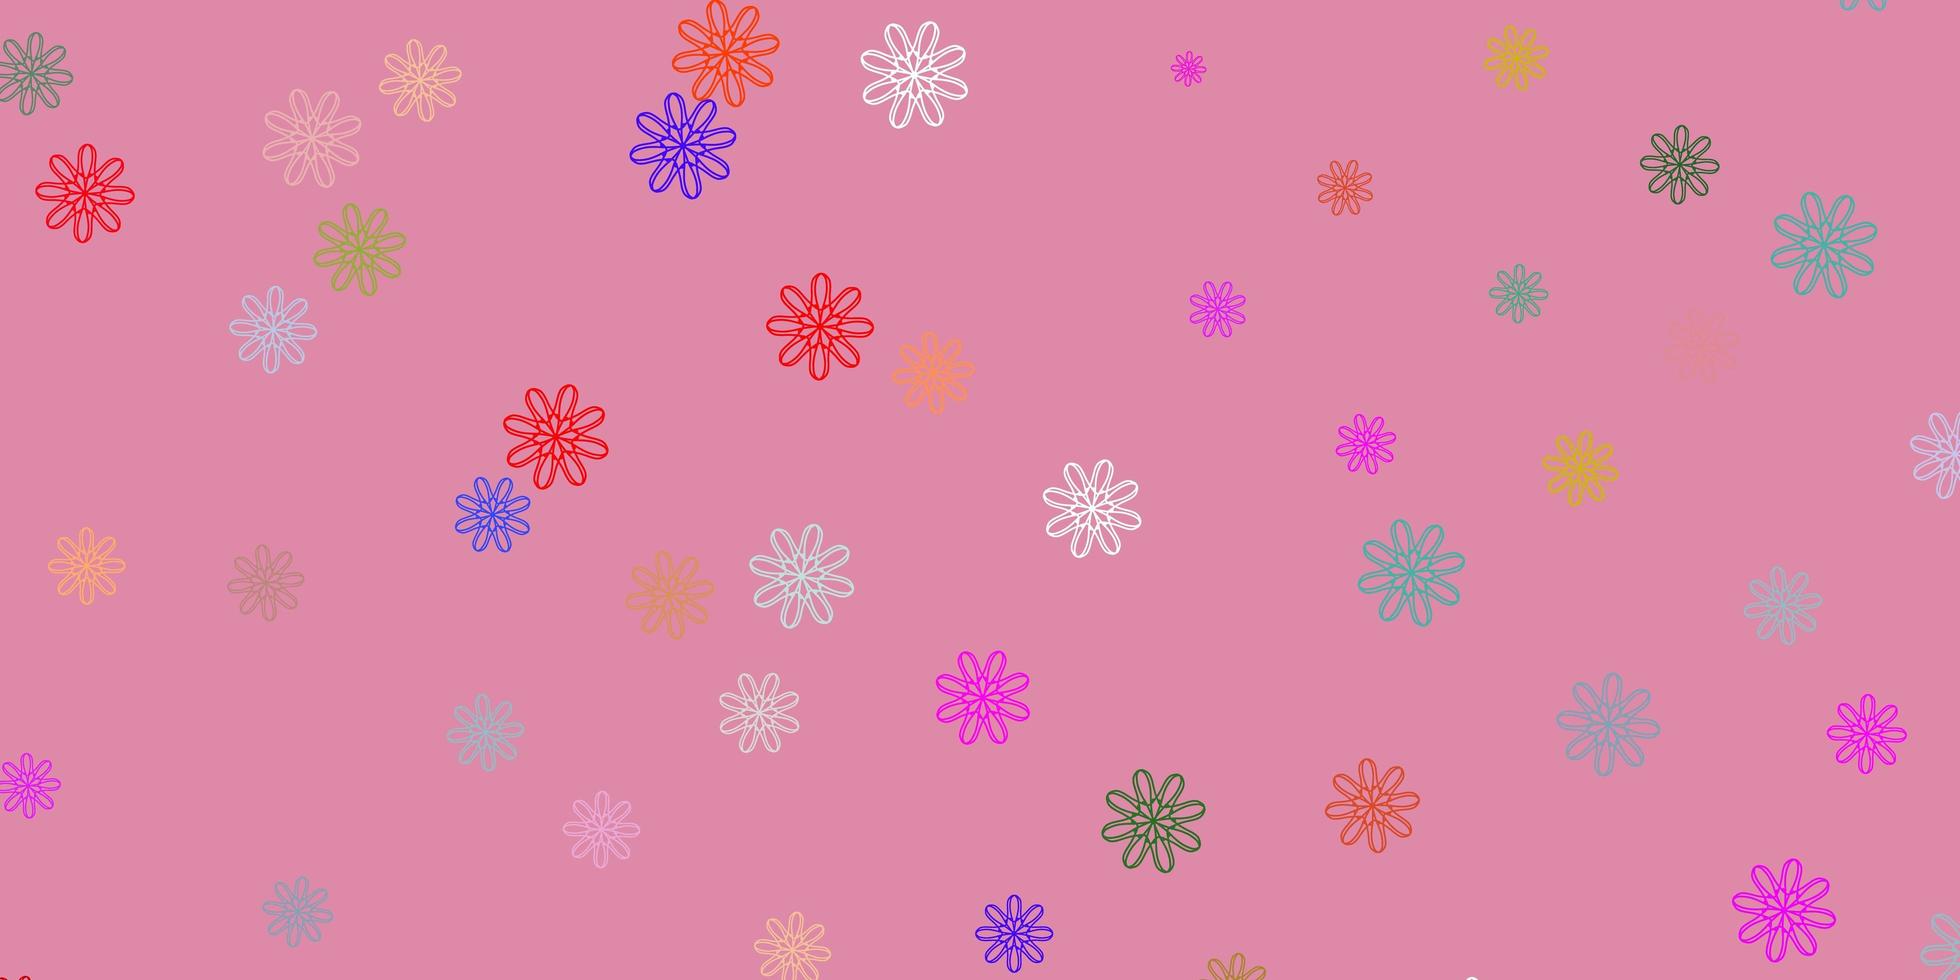 trama di doodle vettoriale multicolore chiaro con fiori.